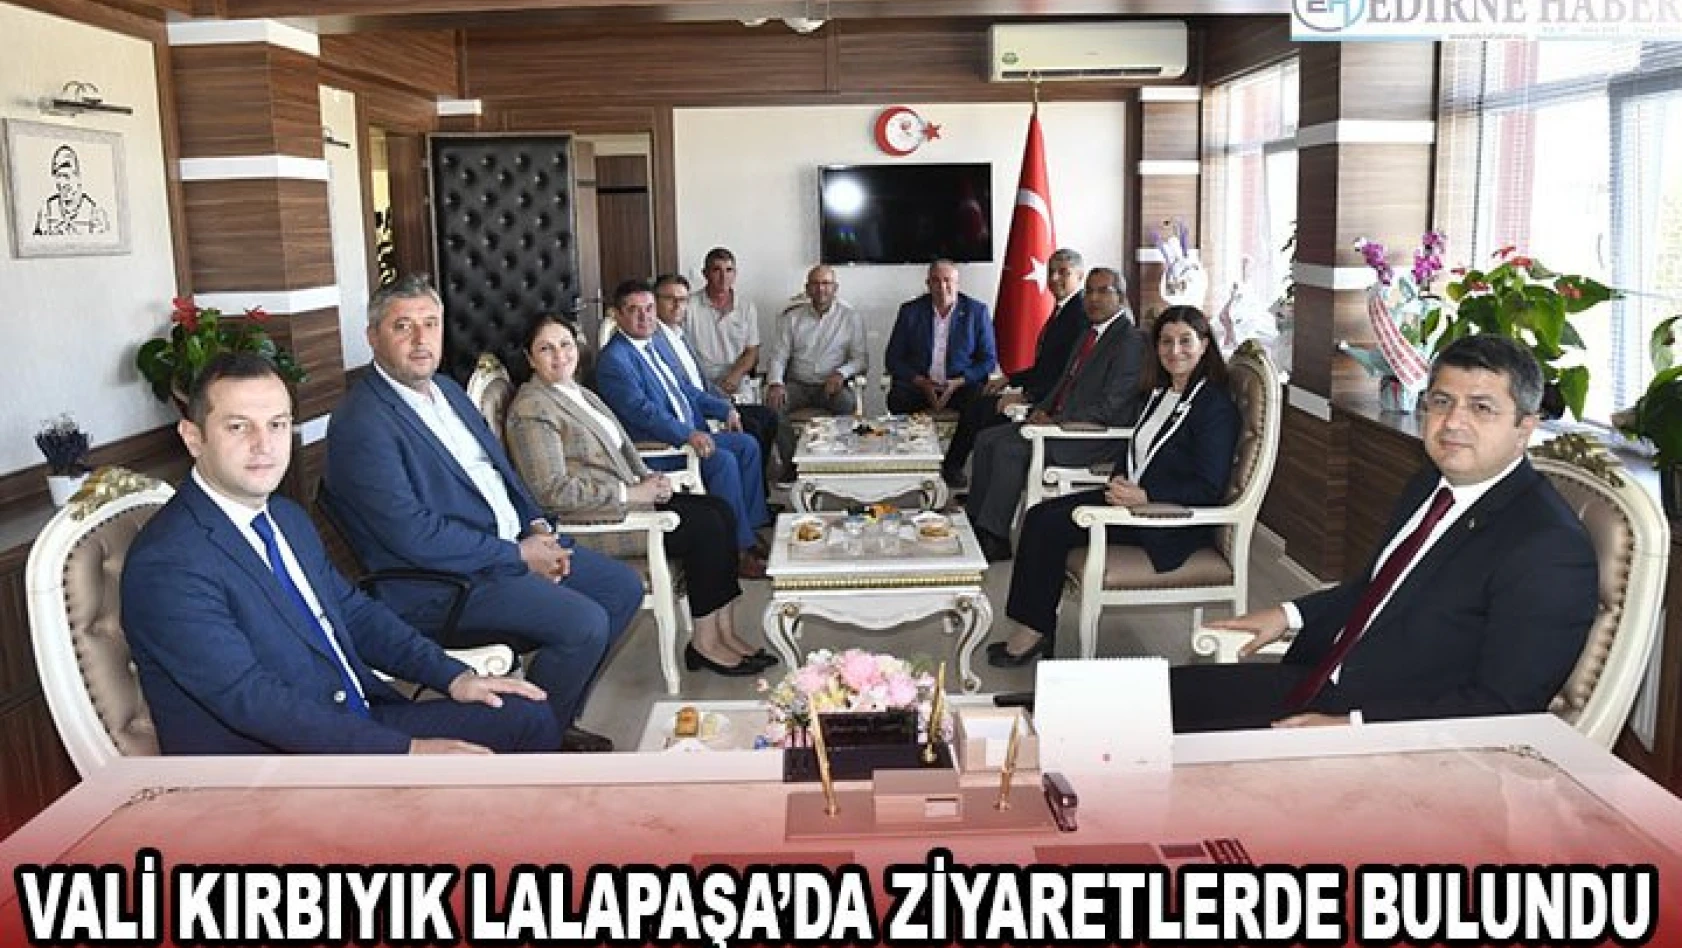 Vali Kırbıyık Lalapaşa'da ziyaretlerde bulundu